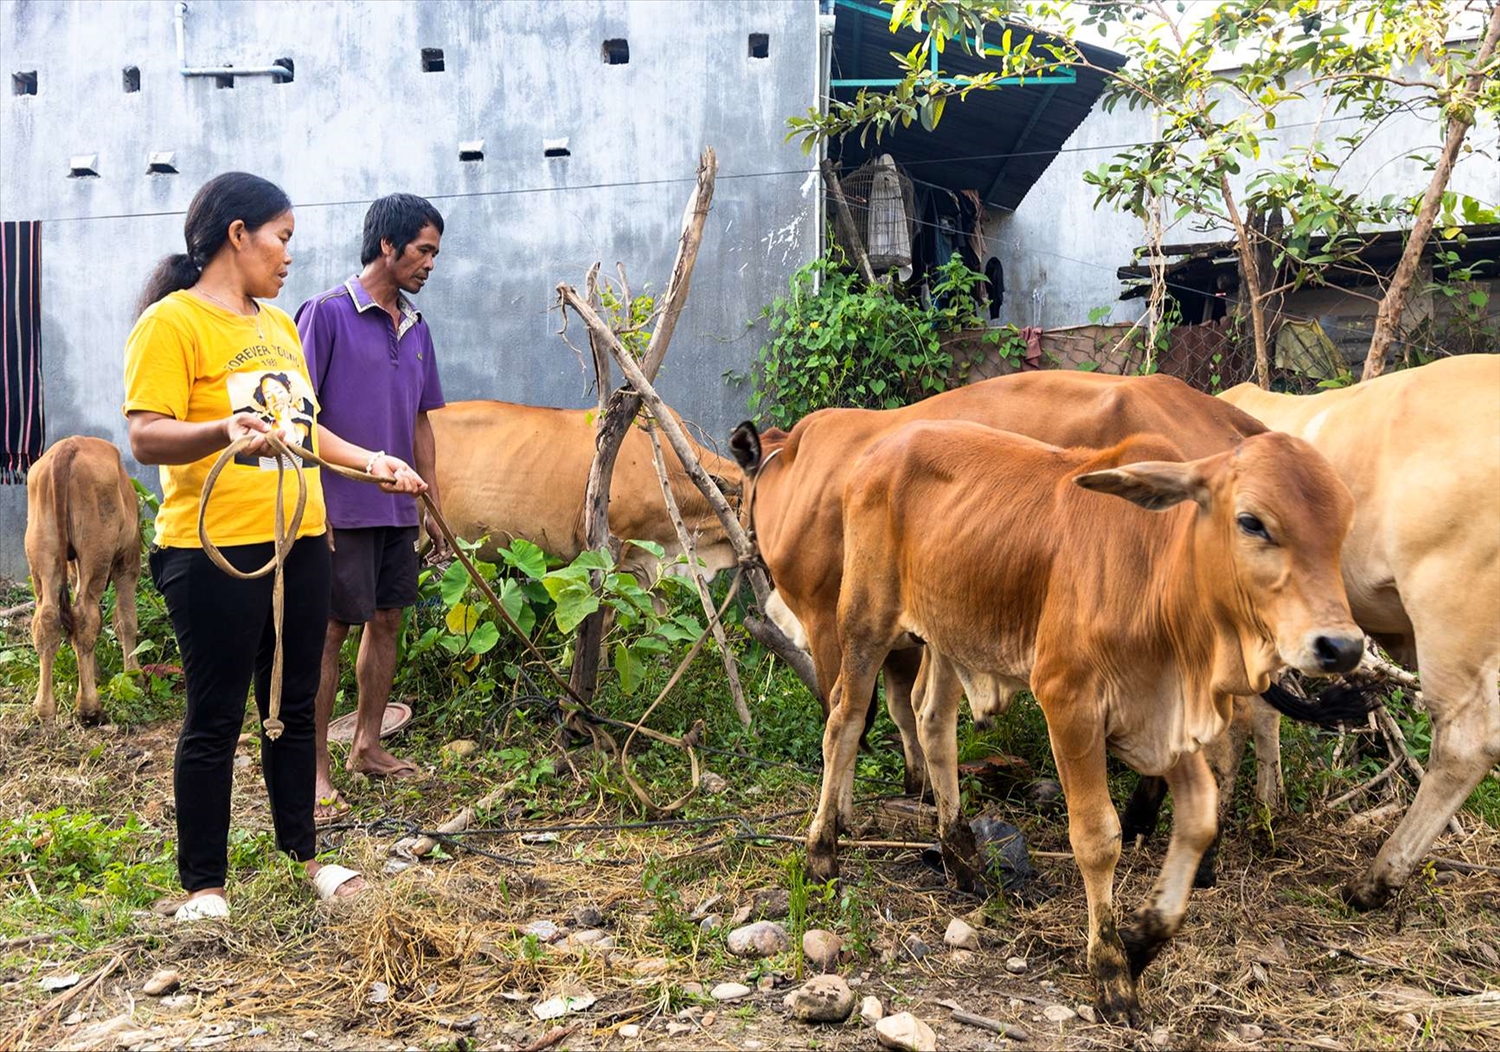 Nhờ nguồn vốn vay ưu đãi, gia đình chị Y Nhem, thôn Kon Tum Kpơng, phường Thắng Lợi, thành phố Kon Tum đầu tư phát triển mô hình chăn nuôi bò, mang lại hiệu quả kinh tế cho gia đình